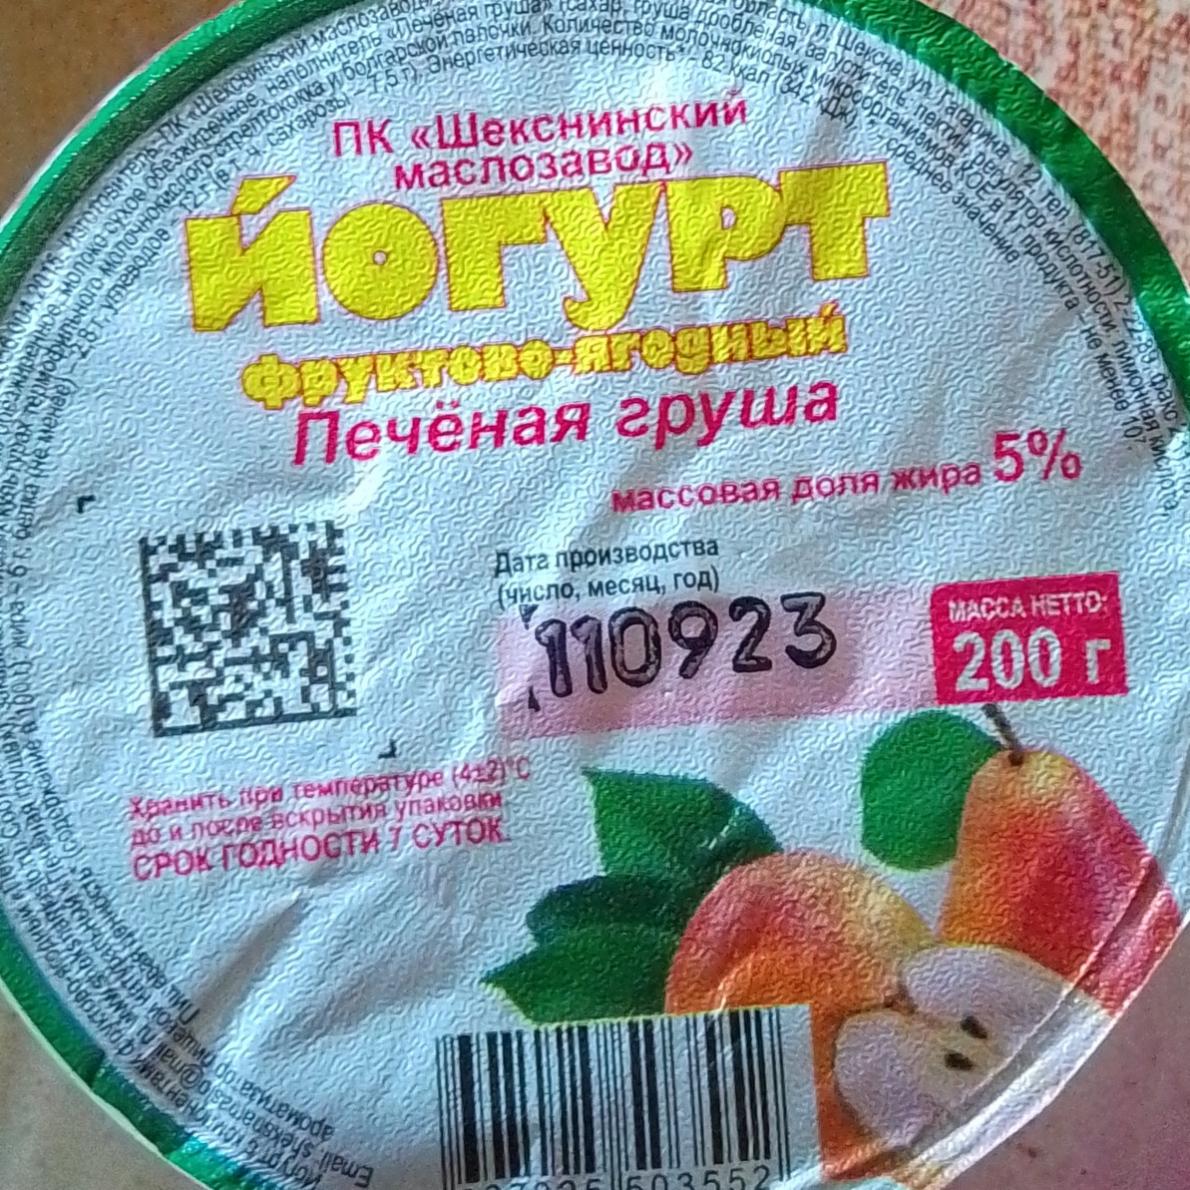 Фото - Йогурт фруктово-ягодный Печёная груша Шекснинский маслозавод